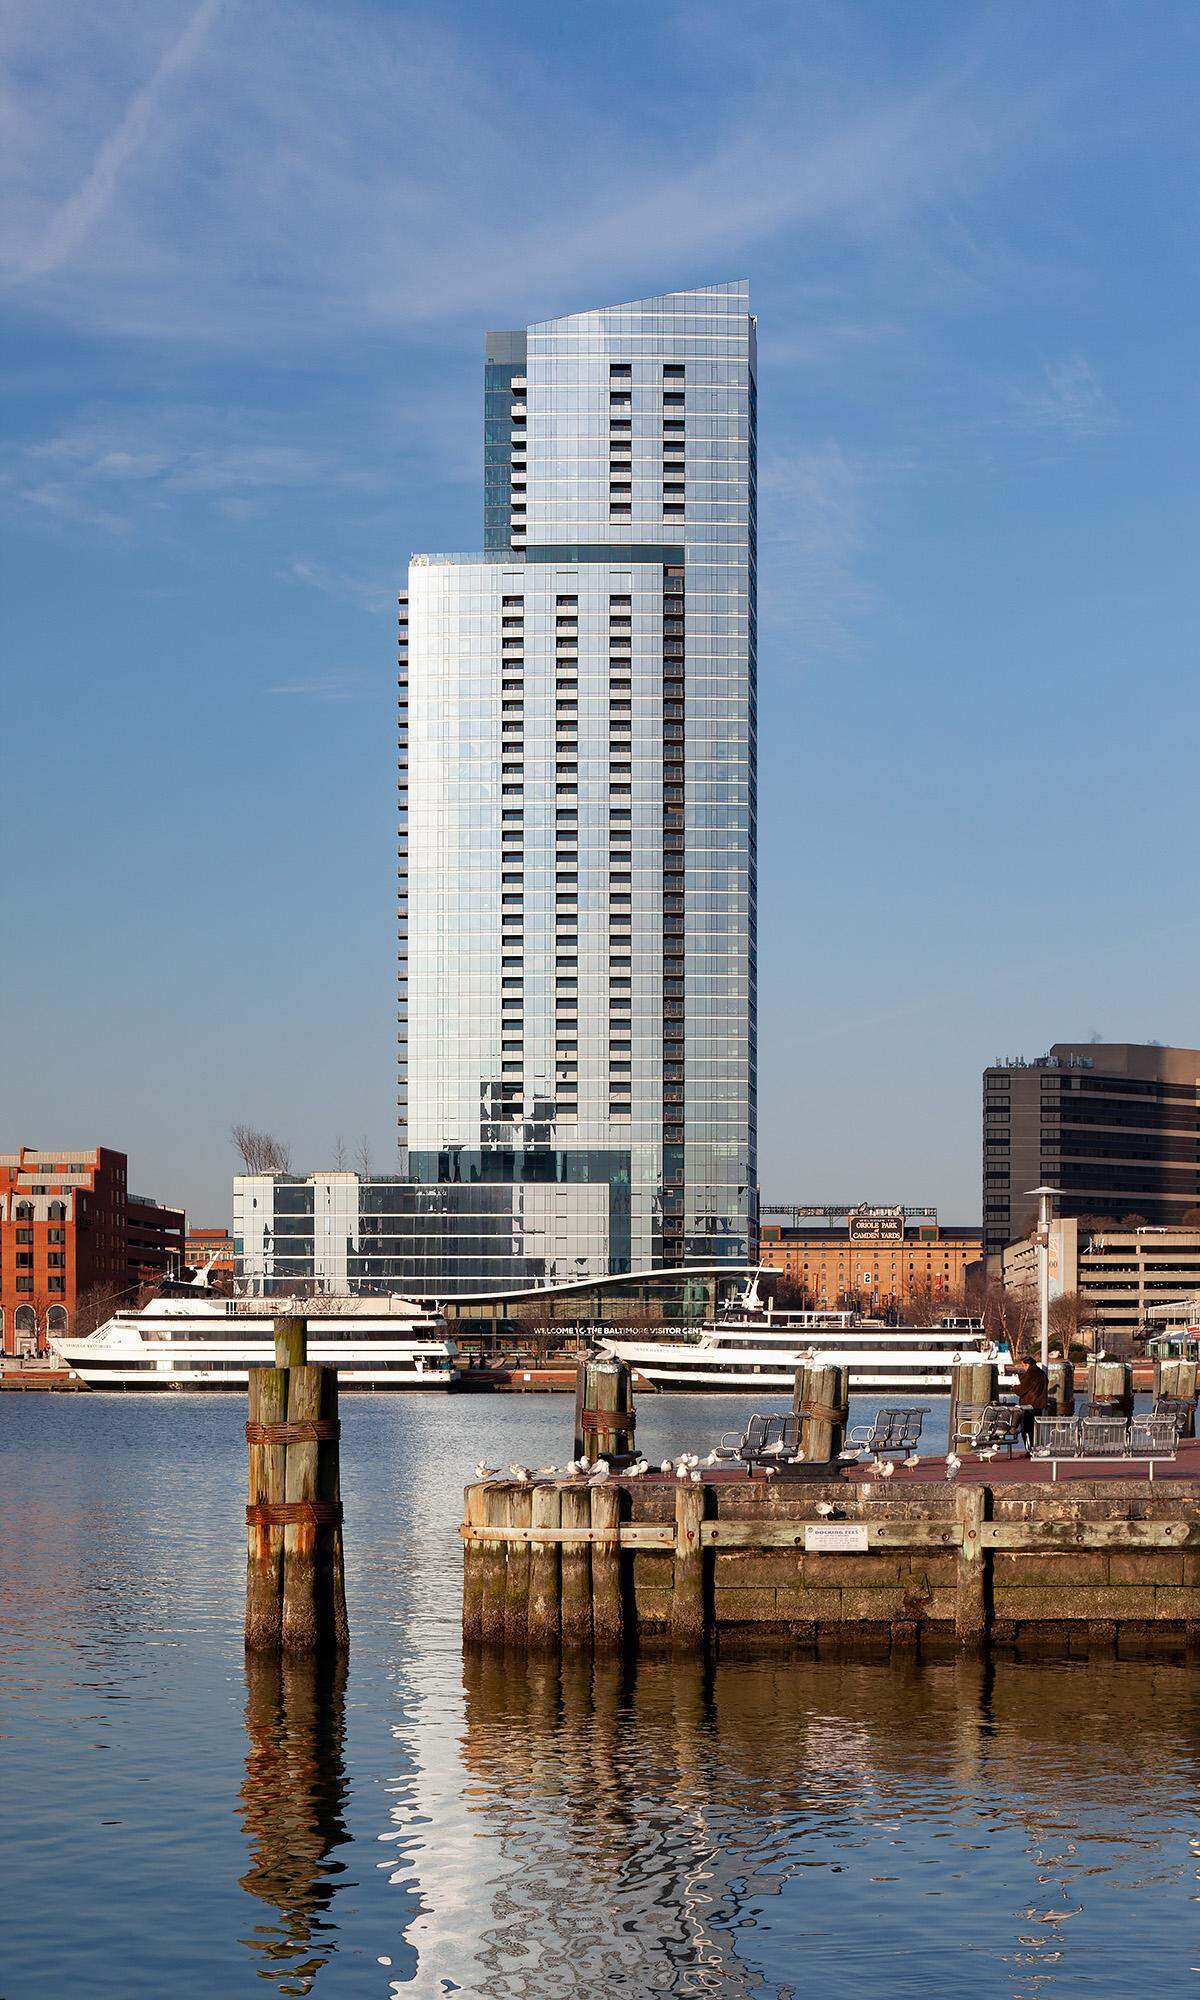 Platz 10: 414 Light Street, Baltimore Das höchste Wohngebäude Baltimores wurde von den Architekten Solomon Cordwell Buenz entworfen. Die segelartige Struktur des Turms soll das nautische Erbe der Stadt wiederspiegeln. Die siebte Etage bietet auf einer Fläche von etwa 3700 Quadratmetern einen Skyline-Park mit Blick auf die Stadt.